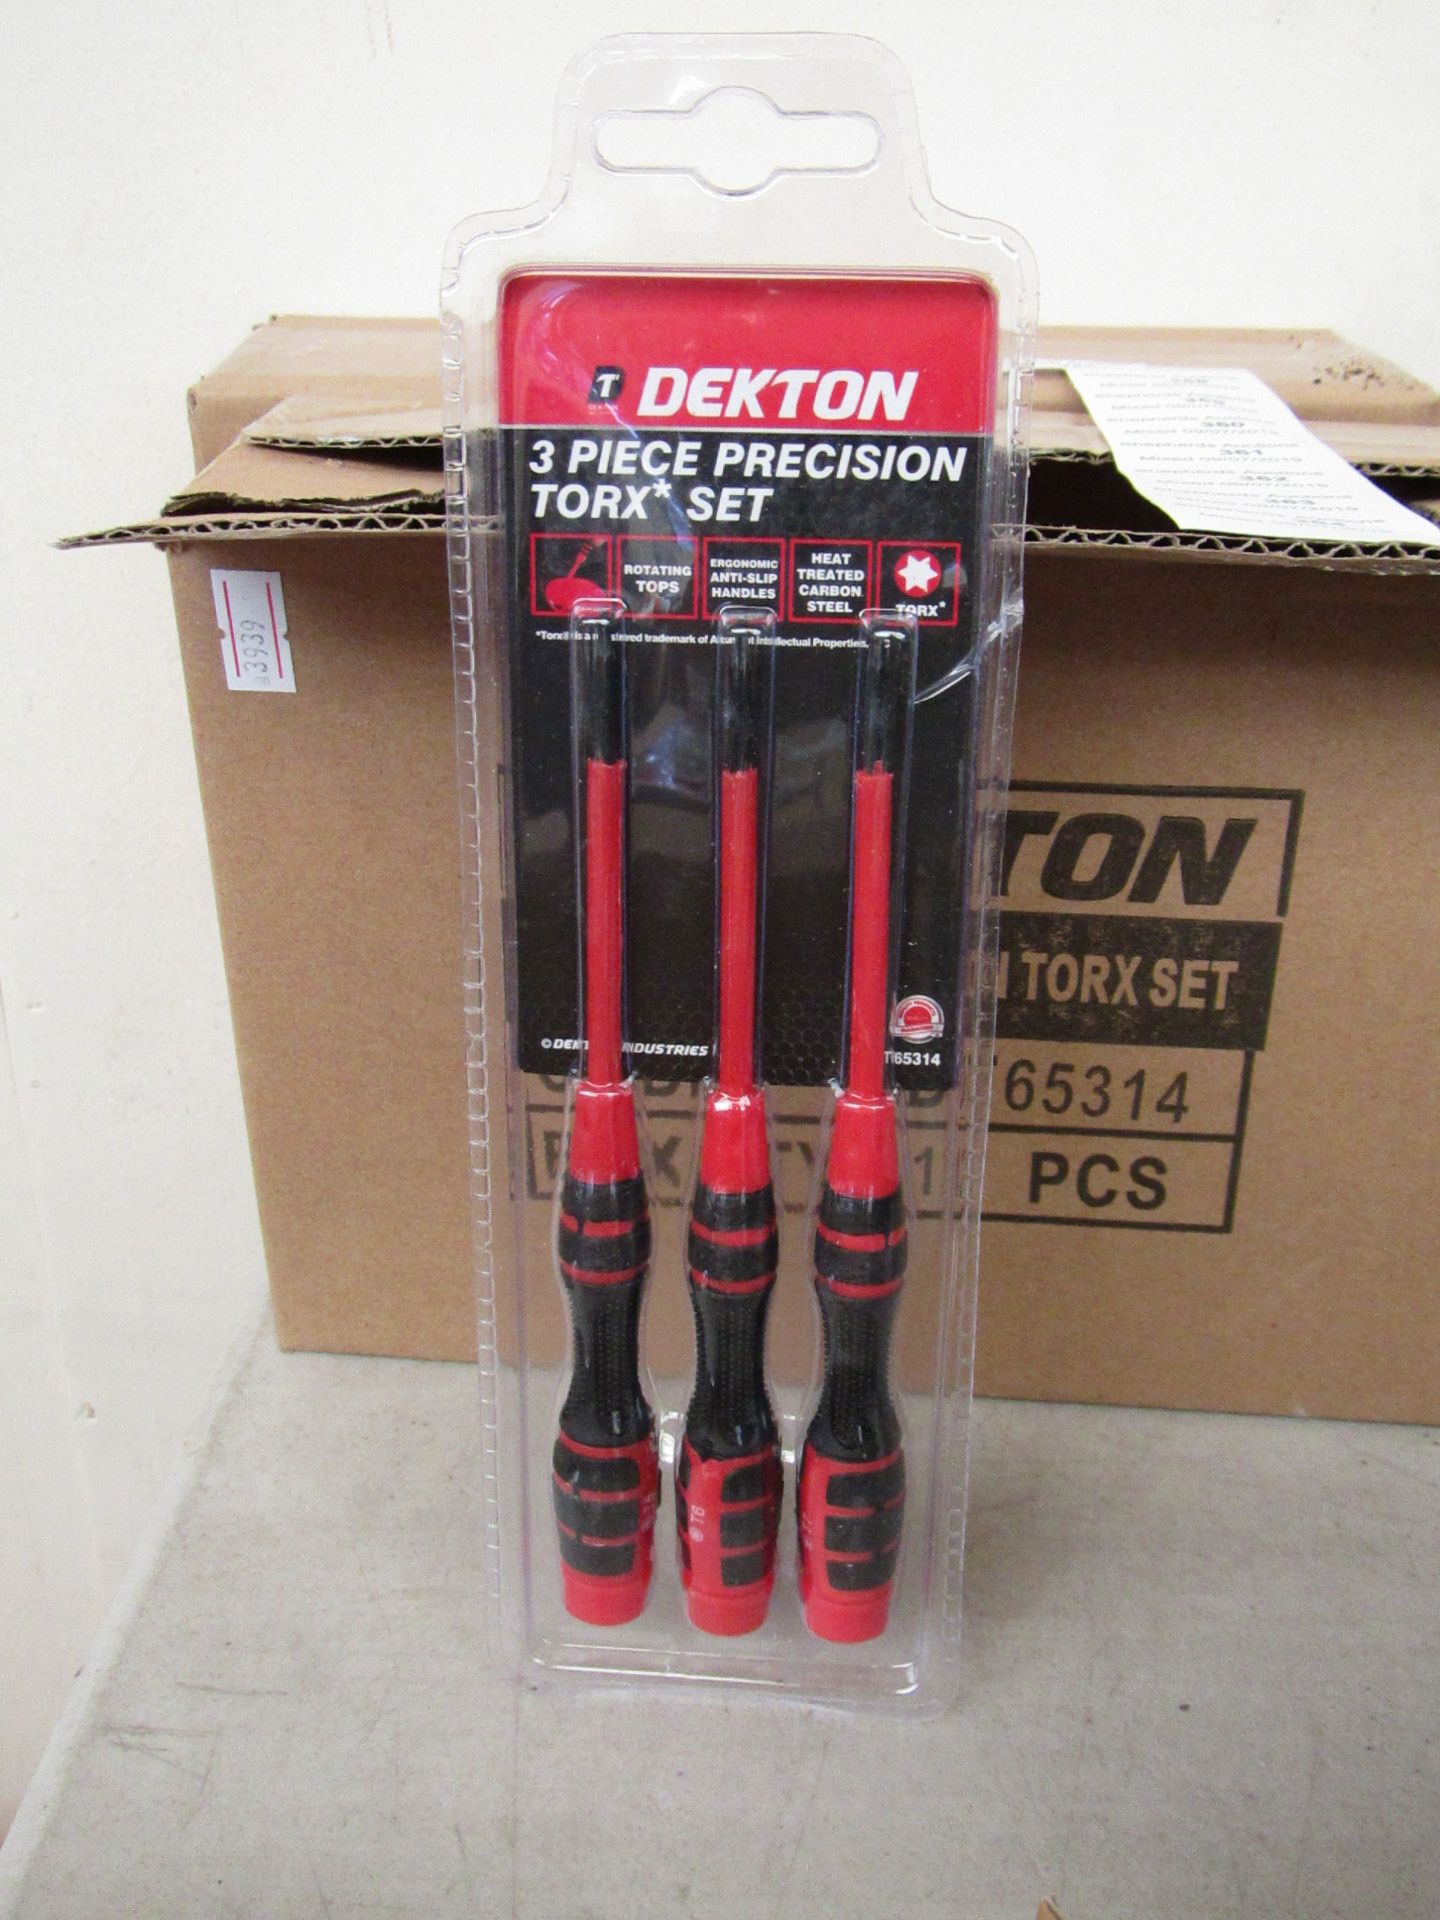 Dekton 3 piece precision torx set, new and boxed